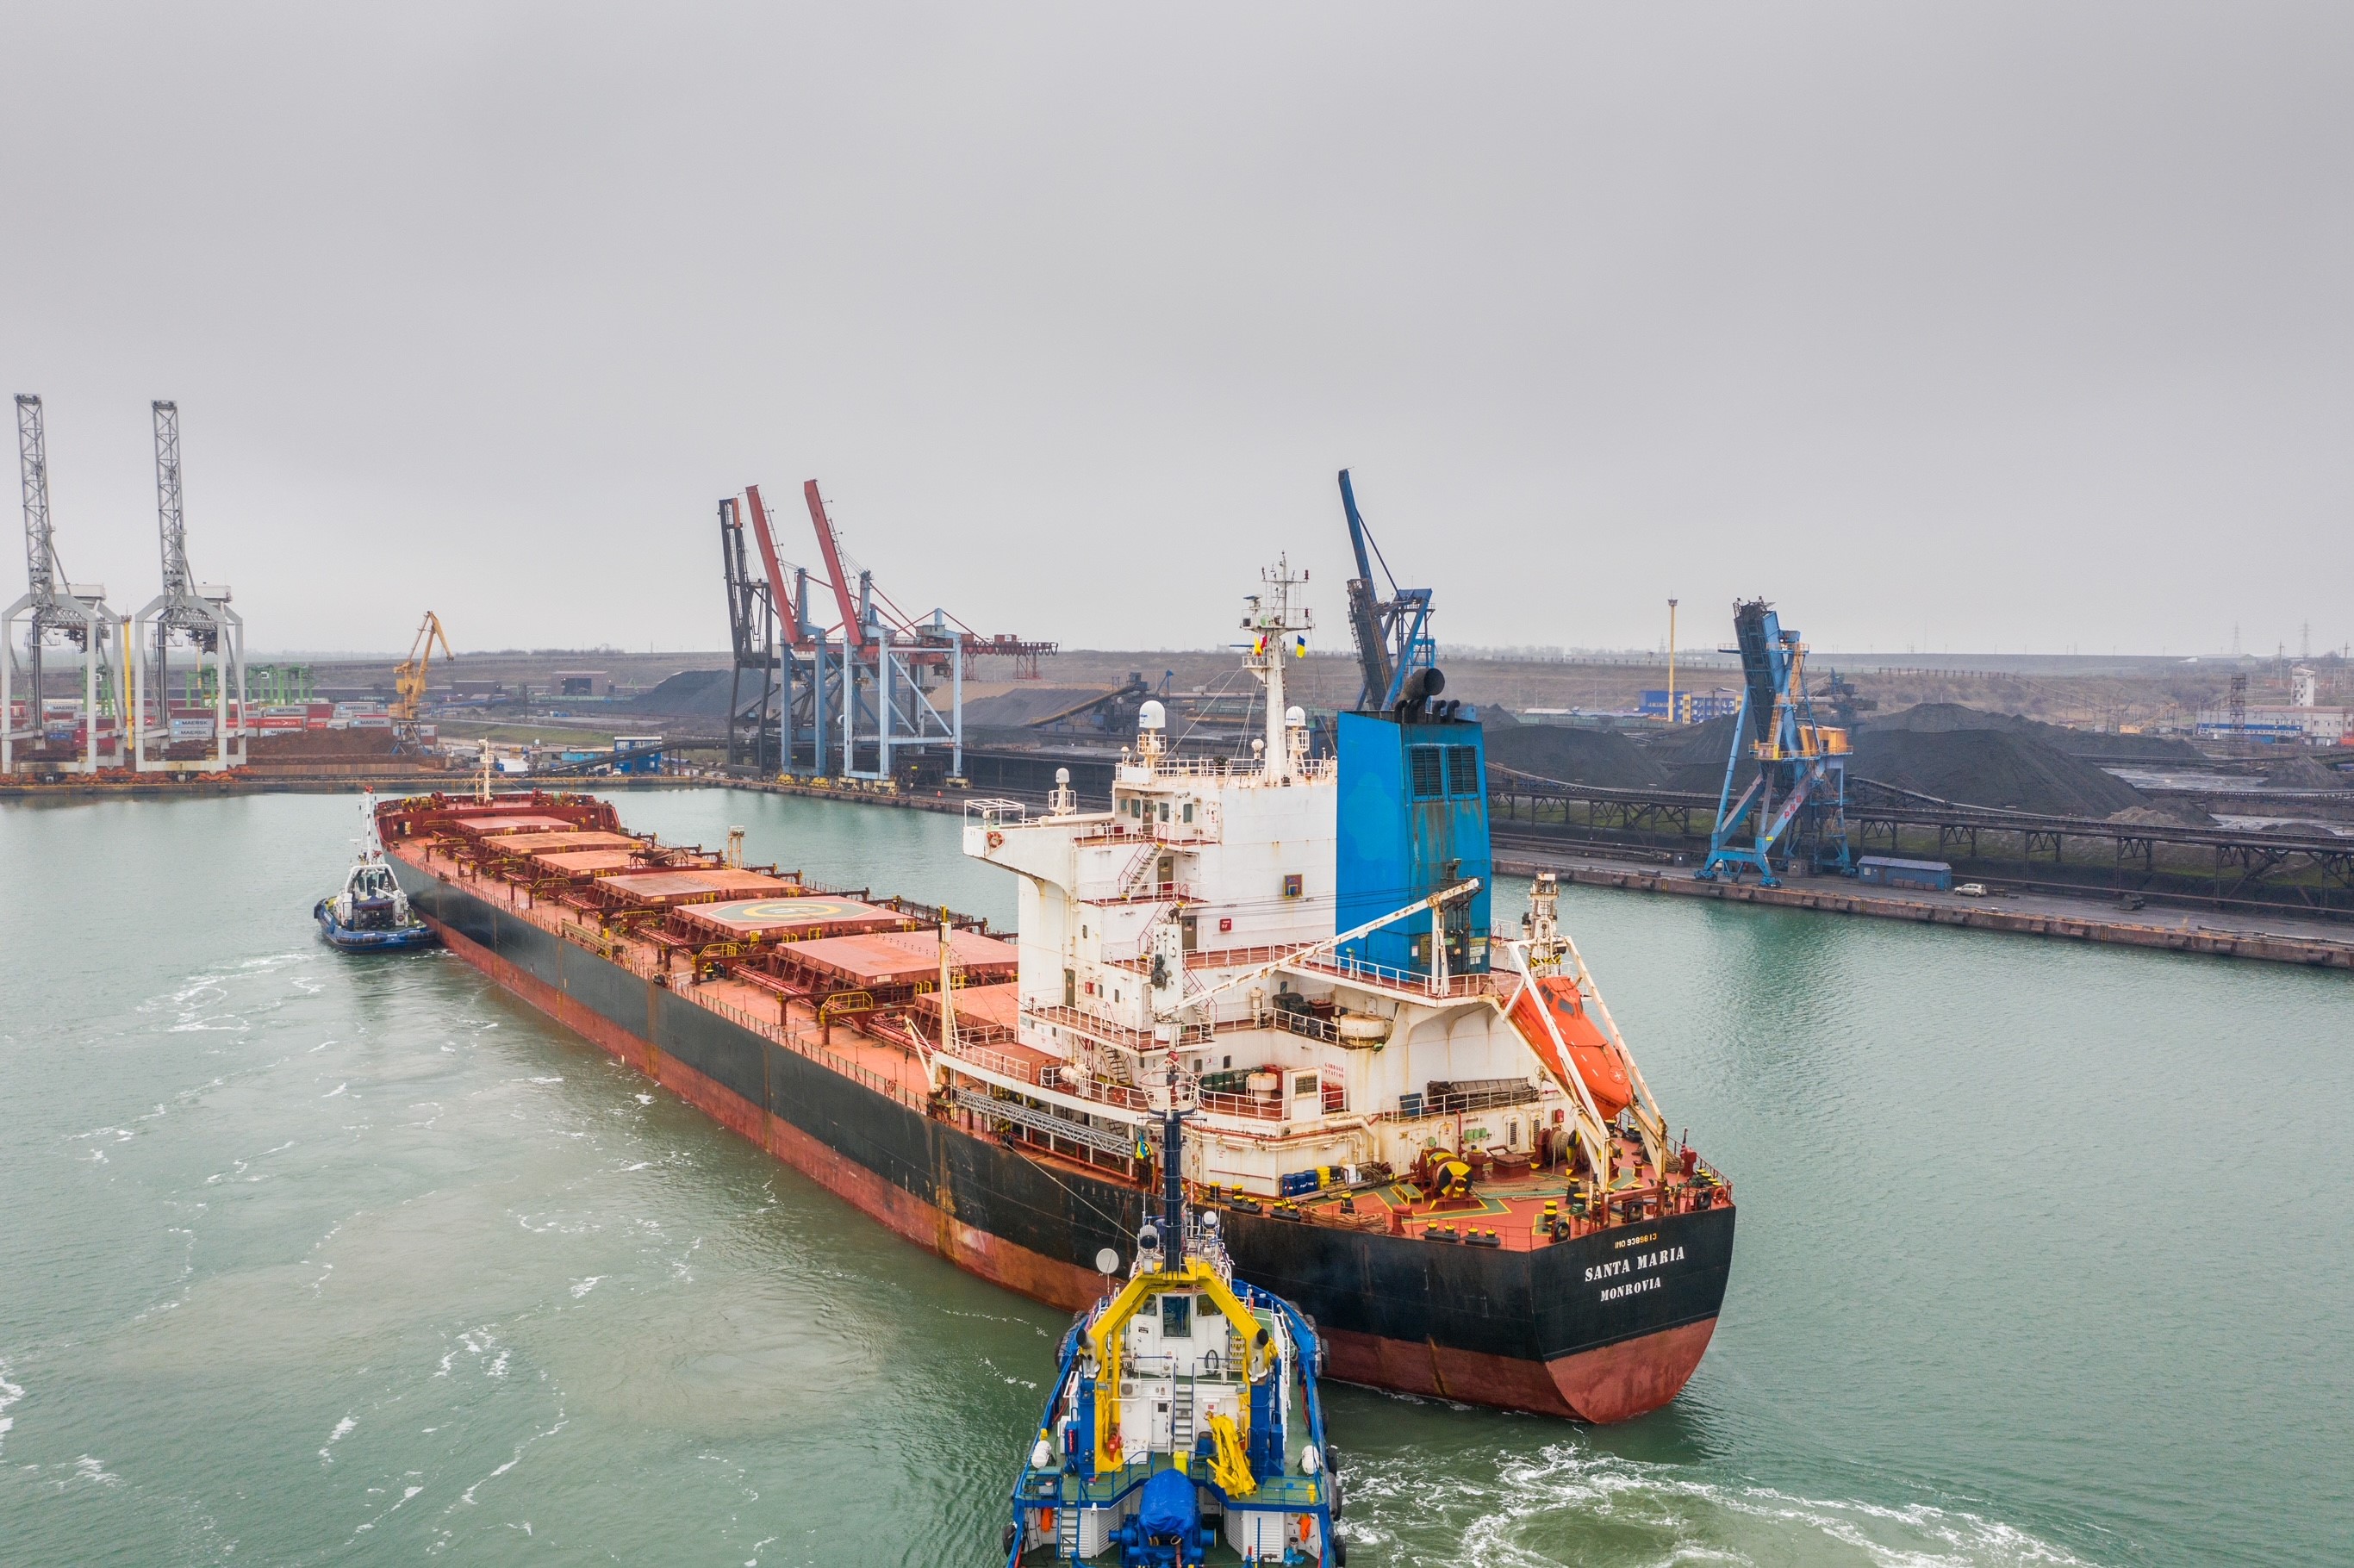 Ще два судна з вугіллям із США та Колумбії прибули в Україну